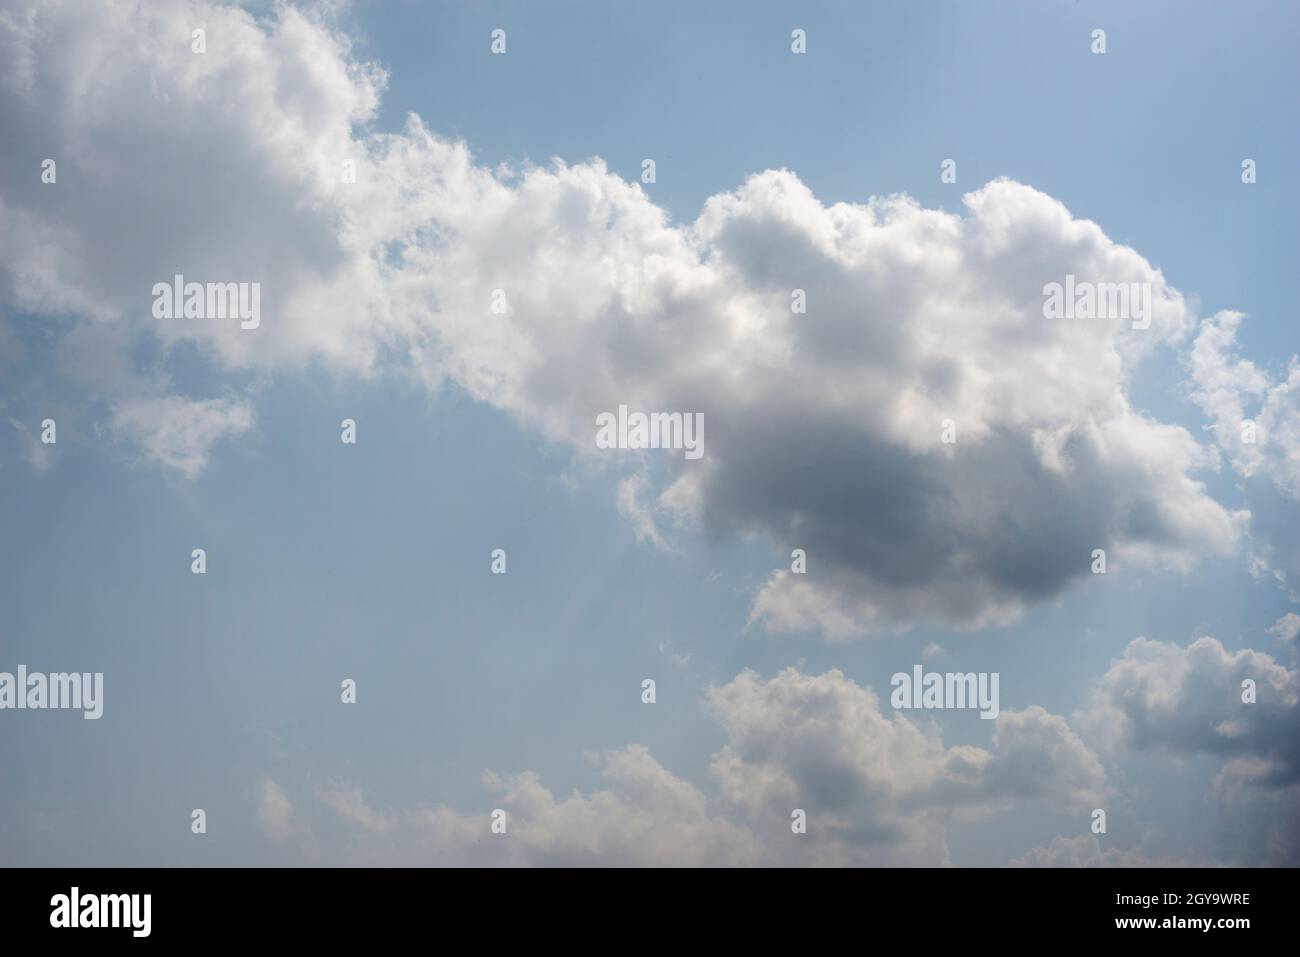 Verstreute Wolkenhaufen in einem blauen Himmel, blauer Himmel Hintergrund mit weißen Wolken, Stockfoto